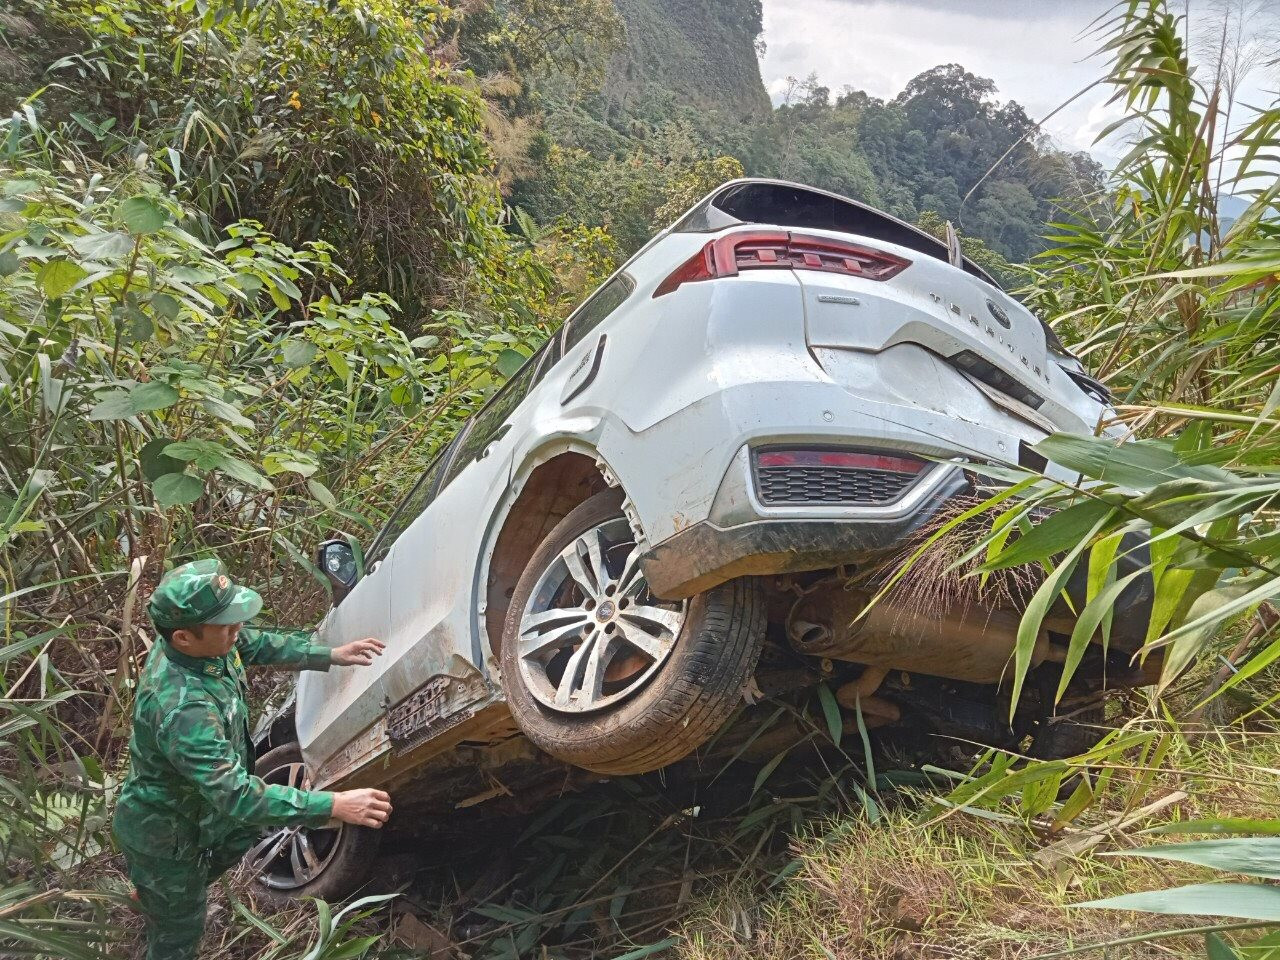 Ứng cứu xe ô tô mang biển số Hà Nội bị tai nạn ở Quảng Trị - Ảnh 3.